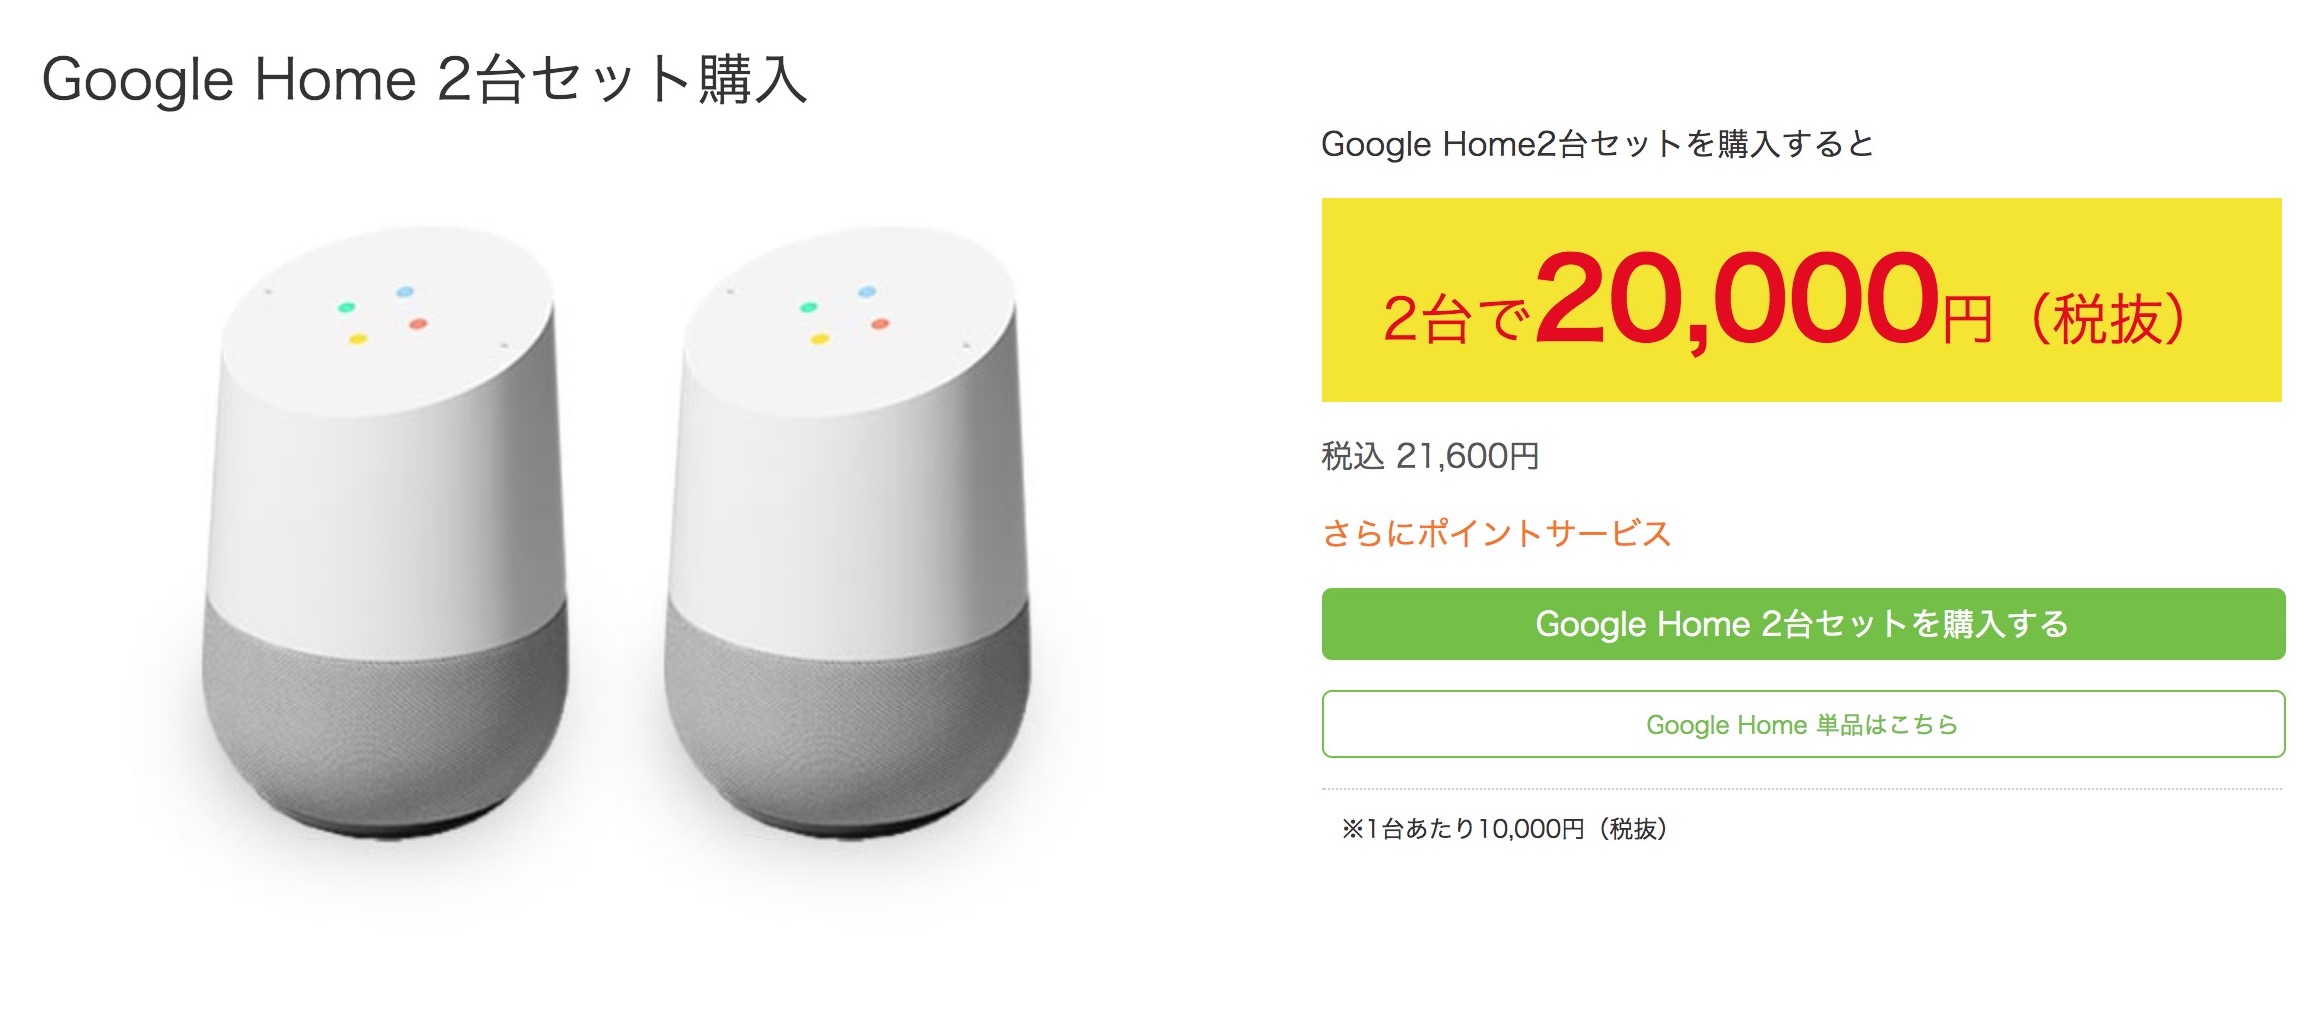 「Google Home」が発売。ビックカメラでChromecastが無料、2台セットで8000円オフも